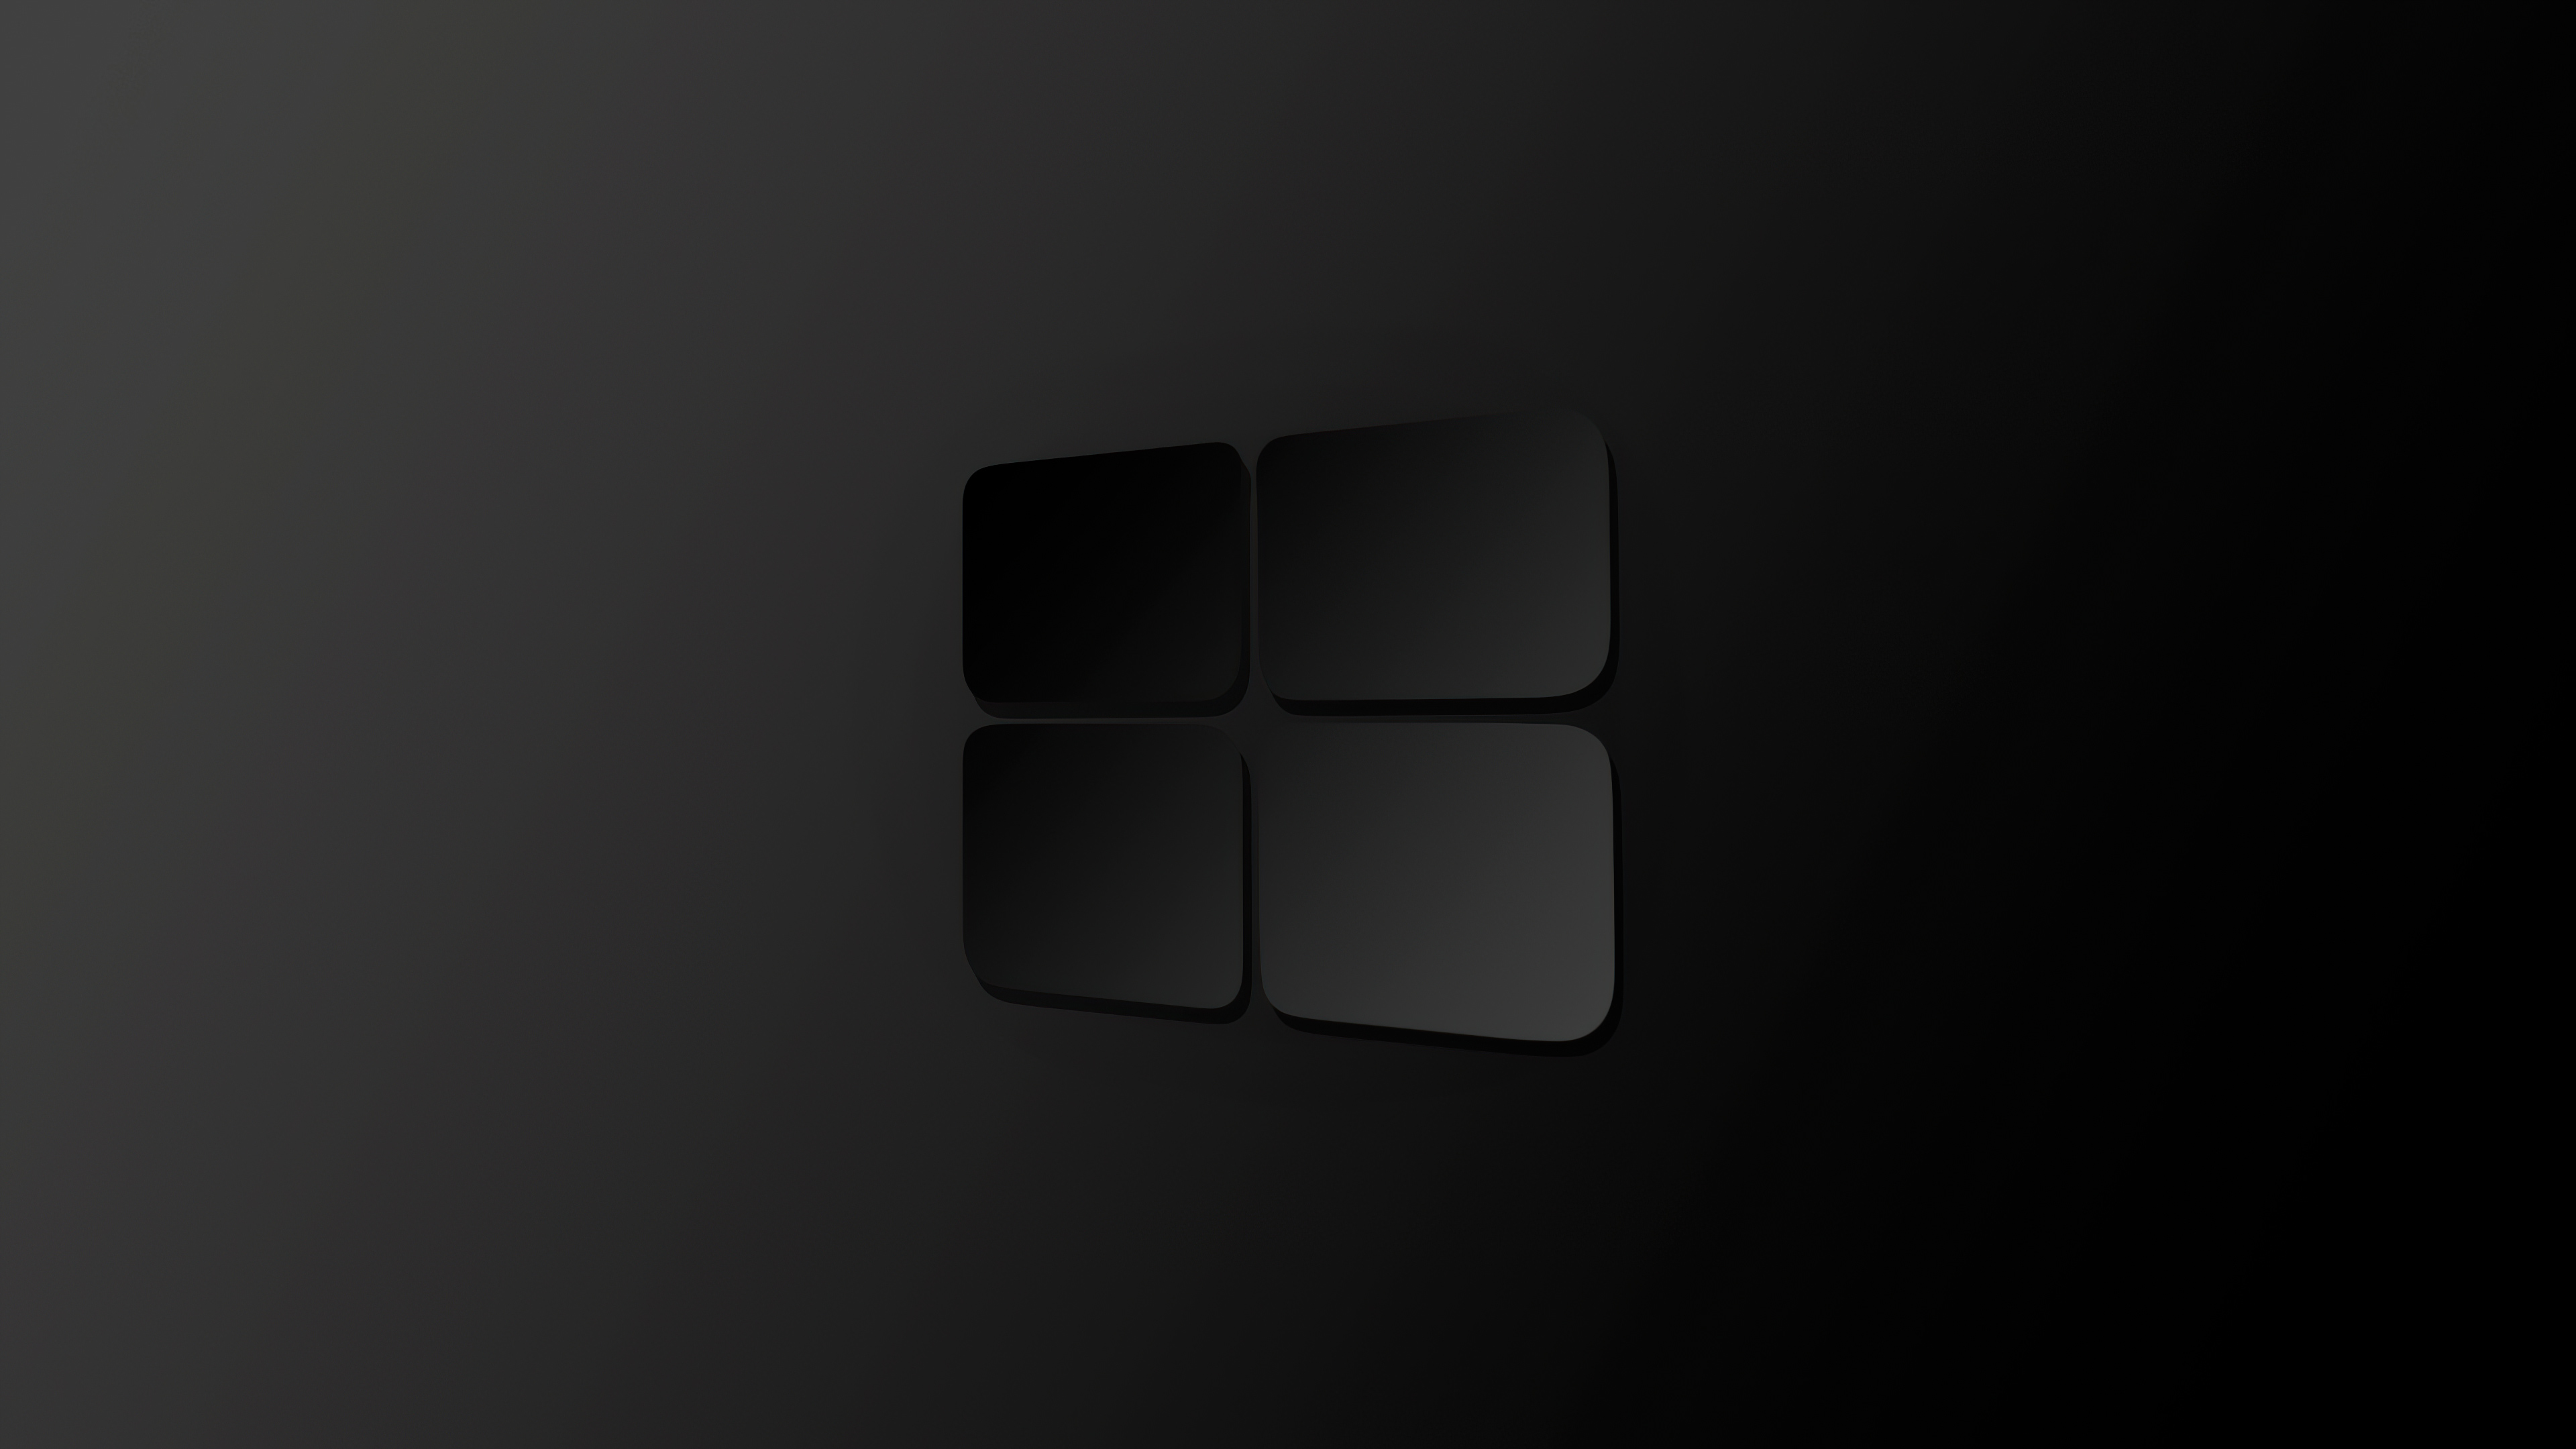 windows windows, computer, hd, 4k, logo, dark, black, minimalism, minimalist Gallery HD Wallpaper